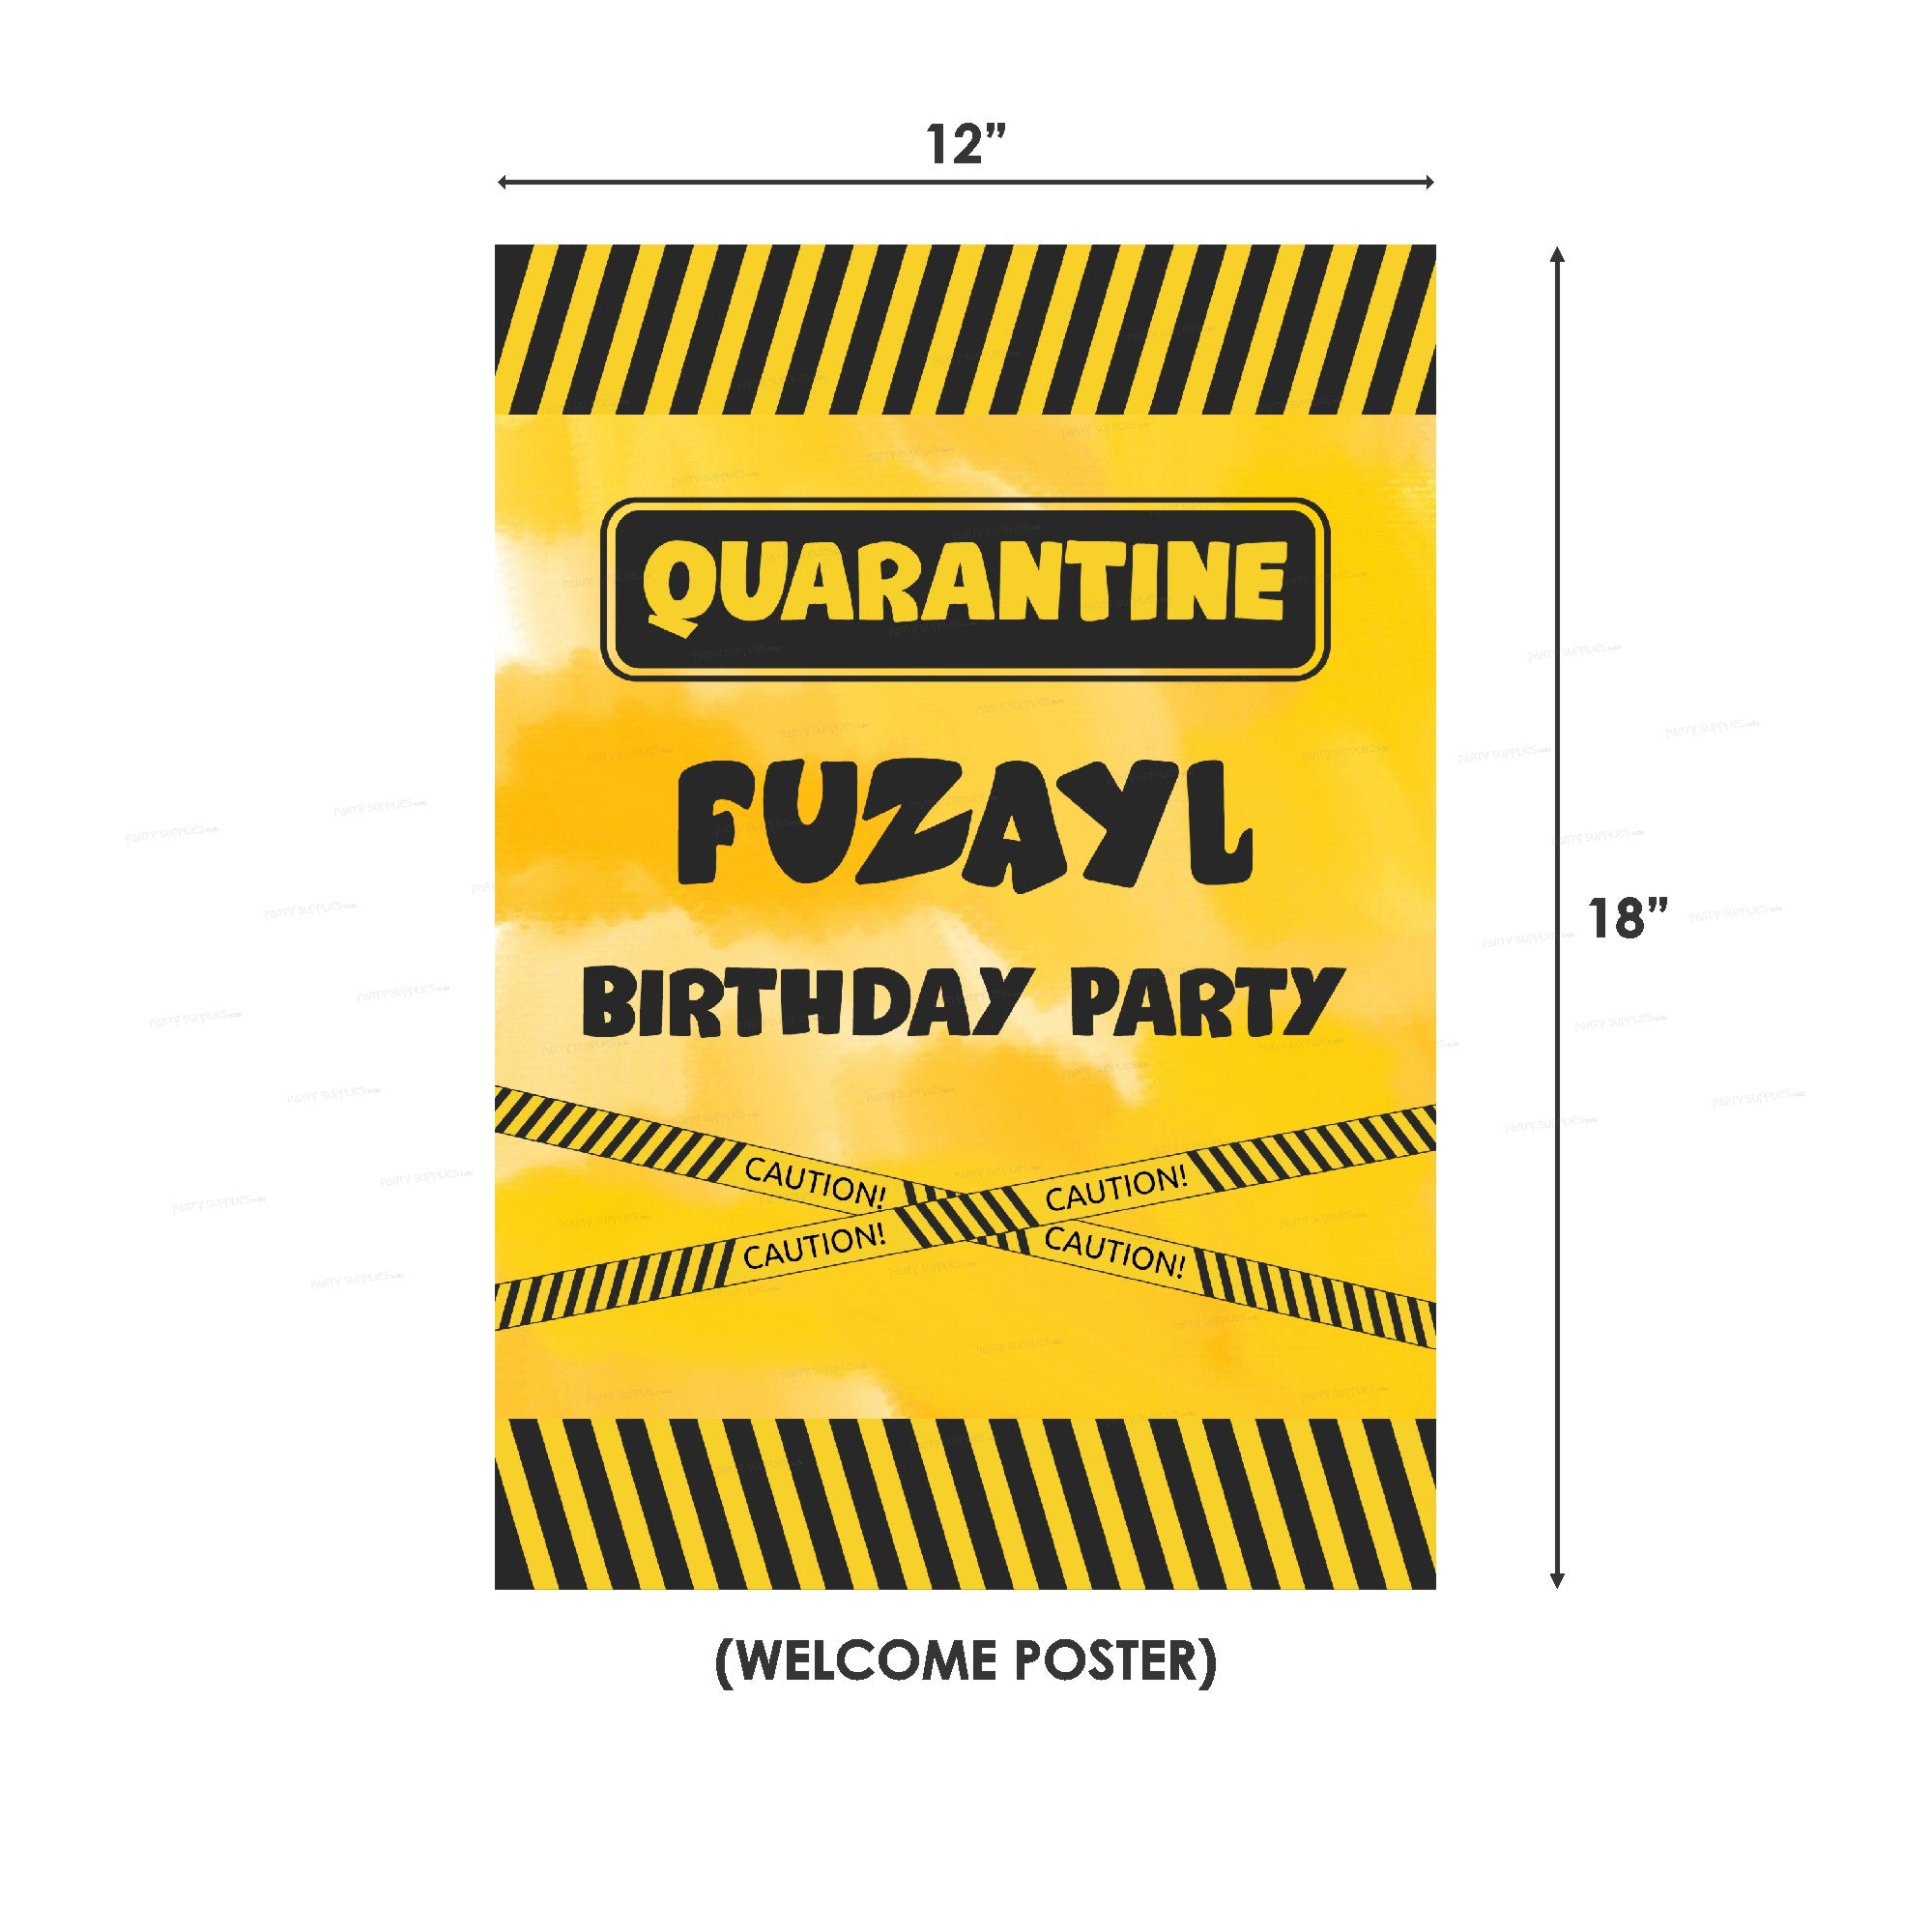 PSI Quarantine Theme Classic Kit